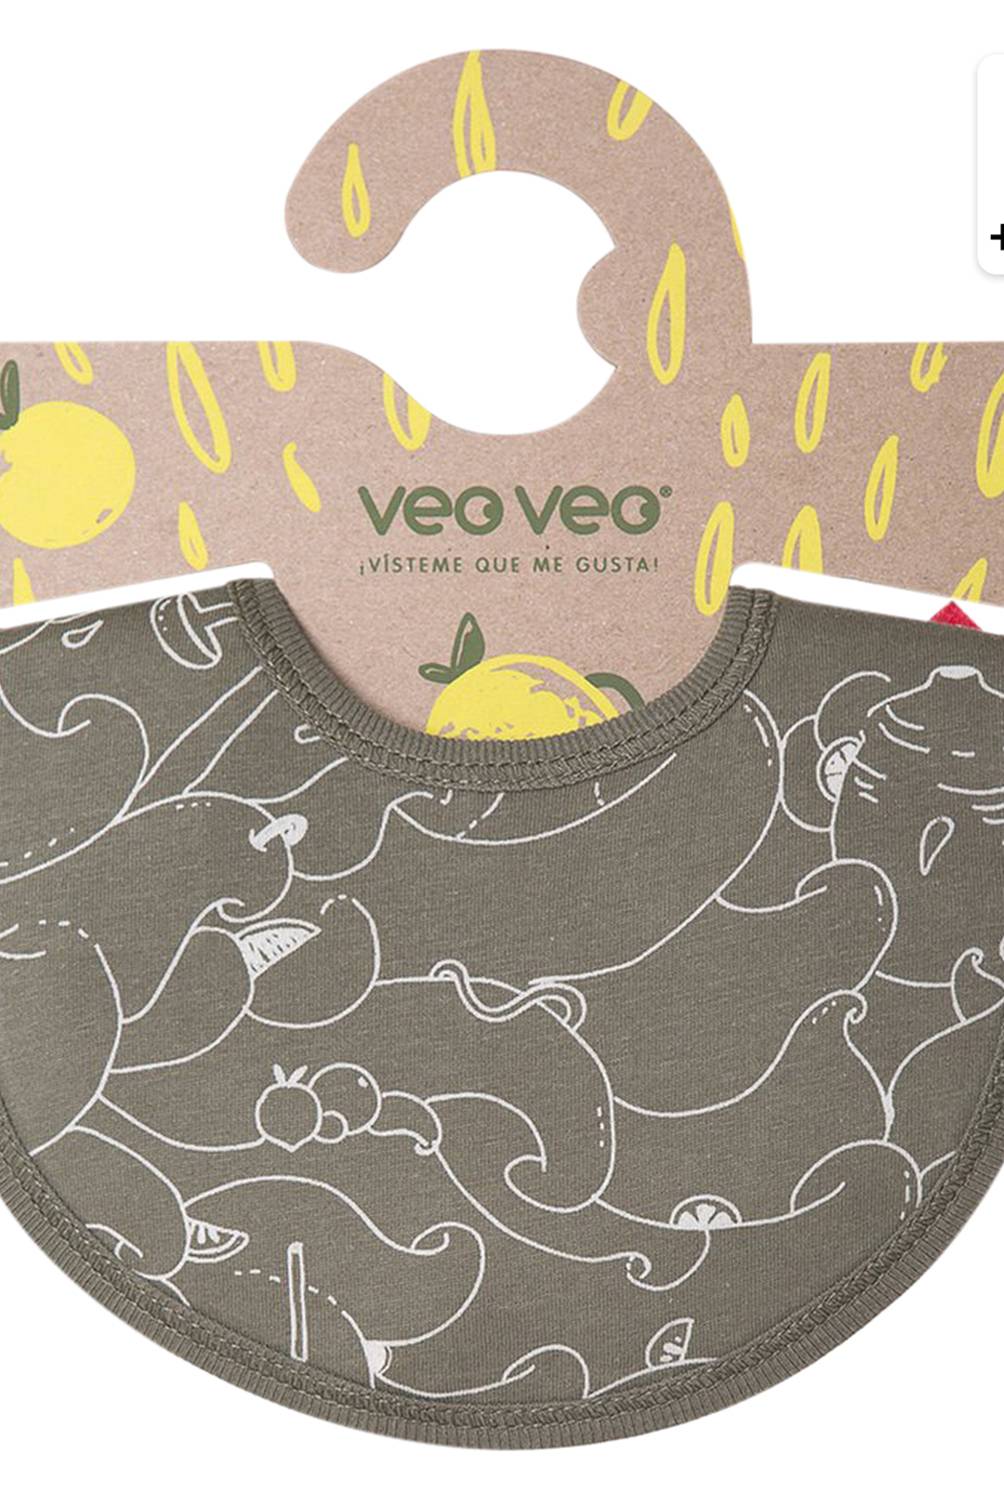 VEO VEO - Babero Impermeable Verde Limonada